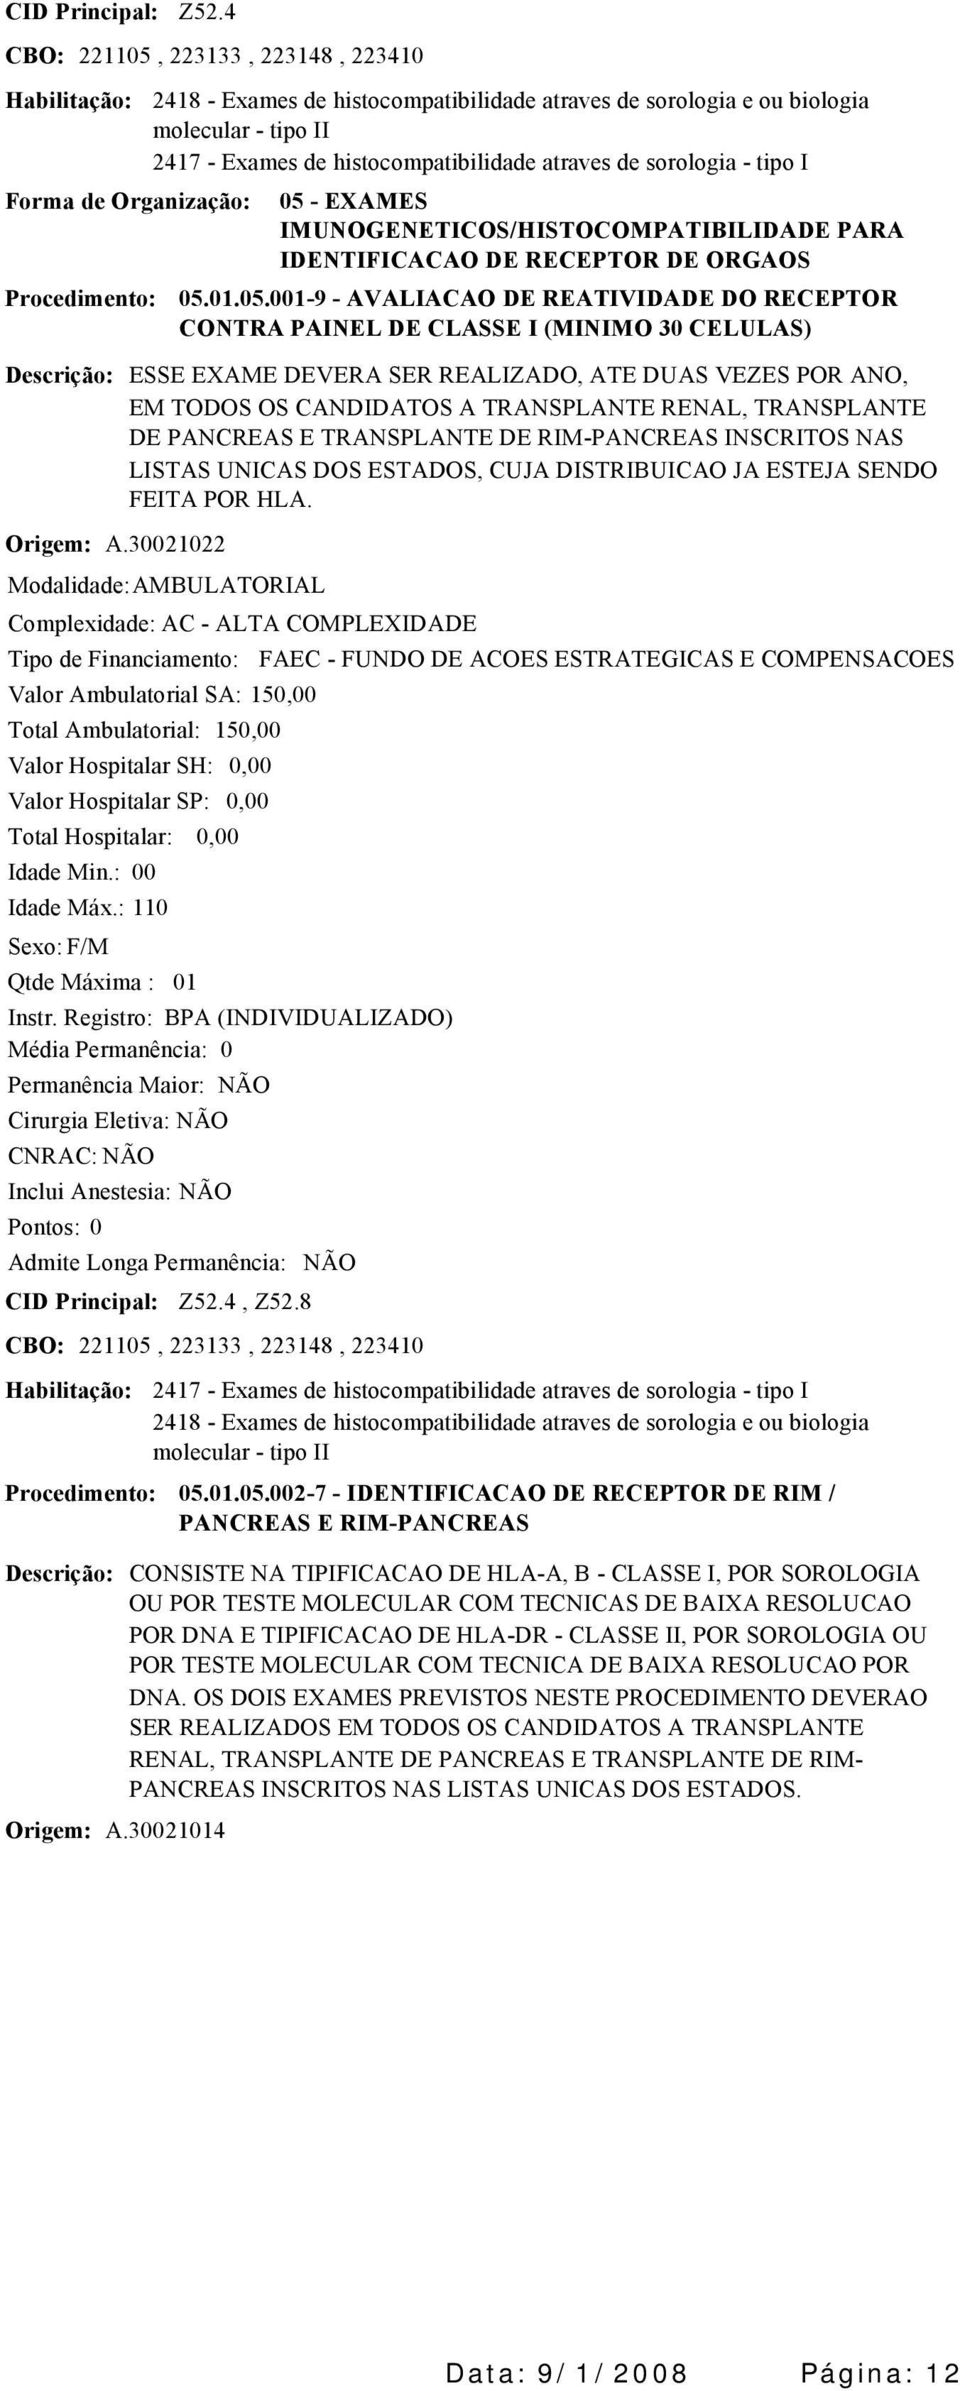 IMUNOGENETICOS/HISTOCOMPATIBILIDADE PARA IDENTIFICACAO DE RECEPTOR DE ORGAOS 05.